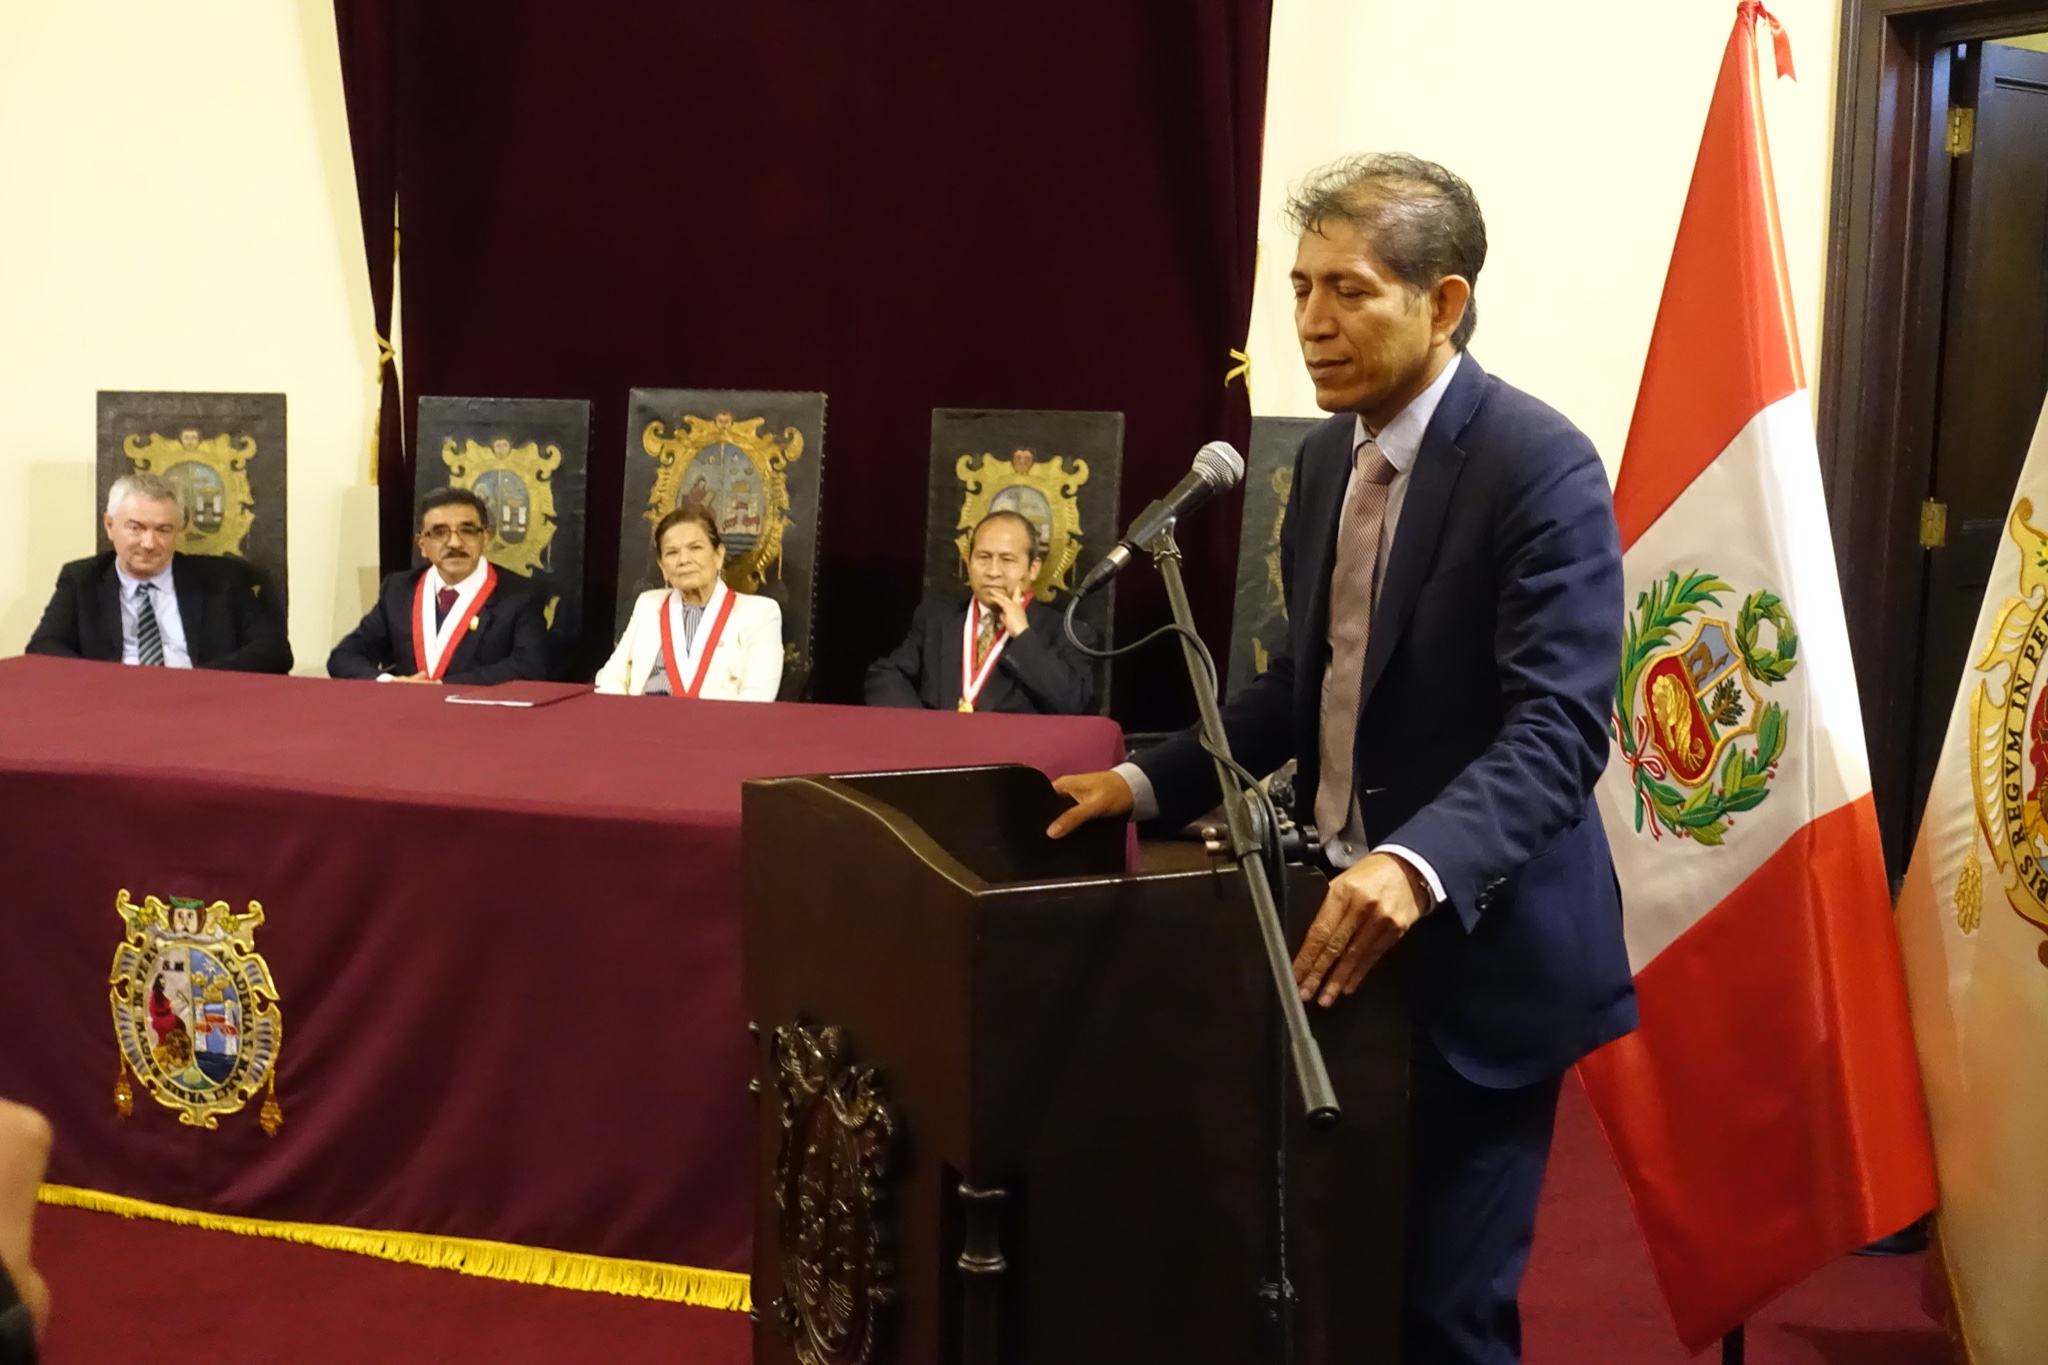 Nombran al Dr. Ing. Jorge Soto Yen, como Director General de la Dirección General de Minería del Ministerio de Energía y Minas.